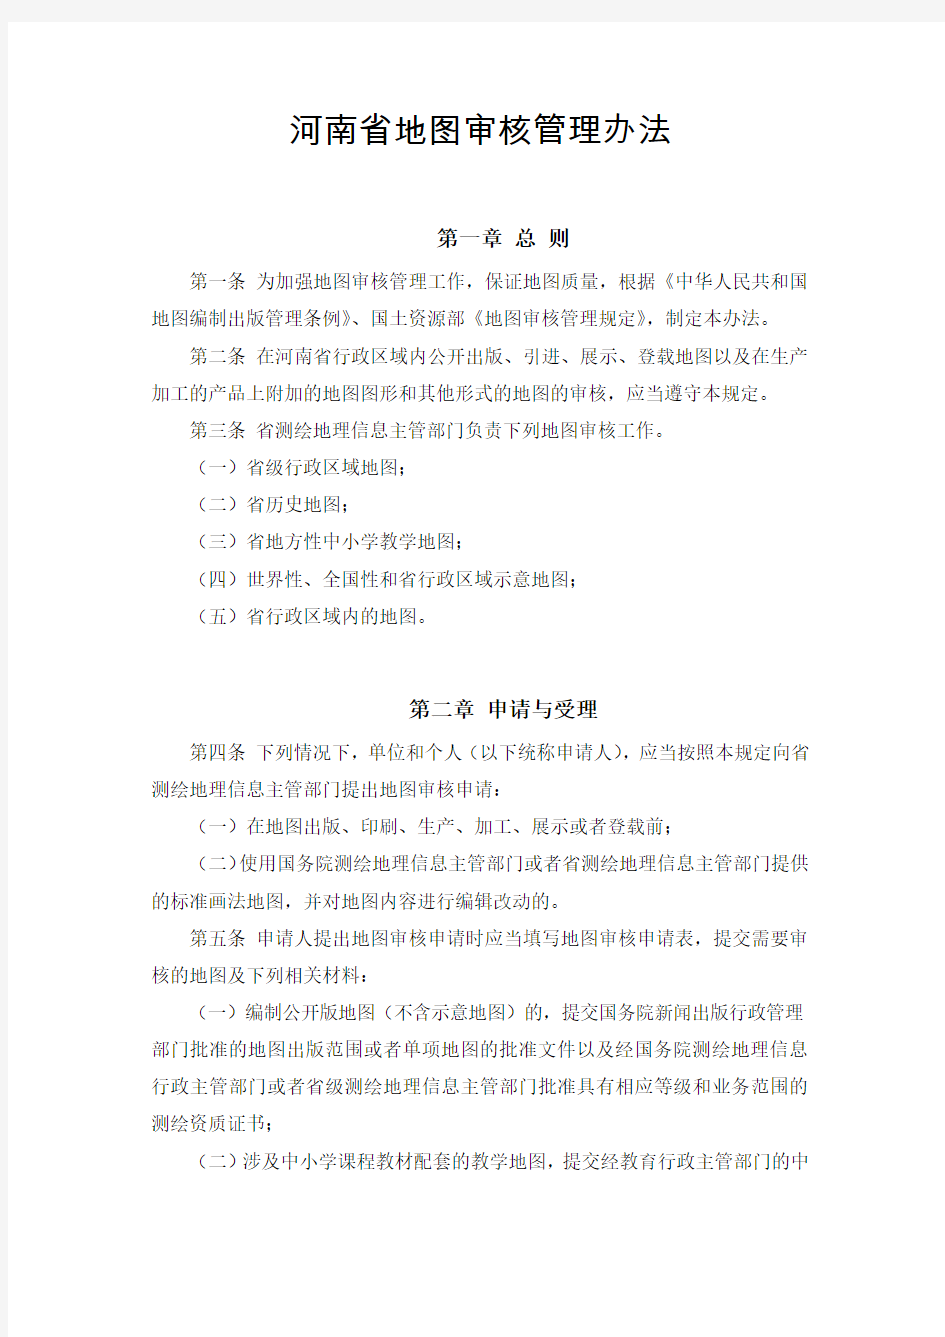 河南省地图审核管理办法